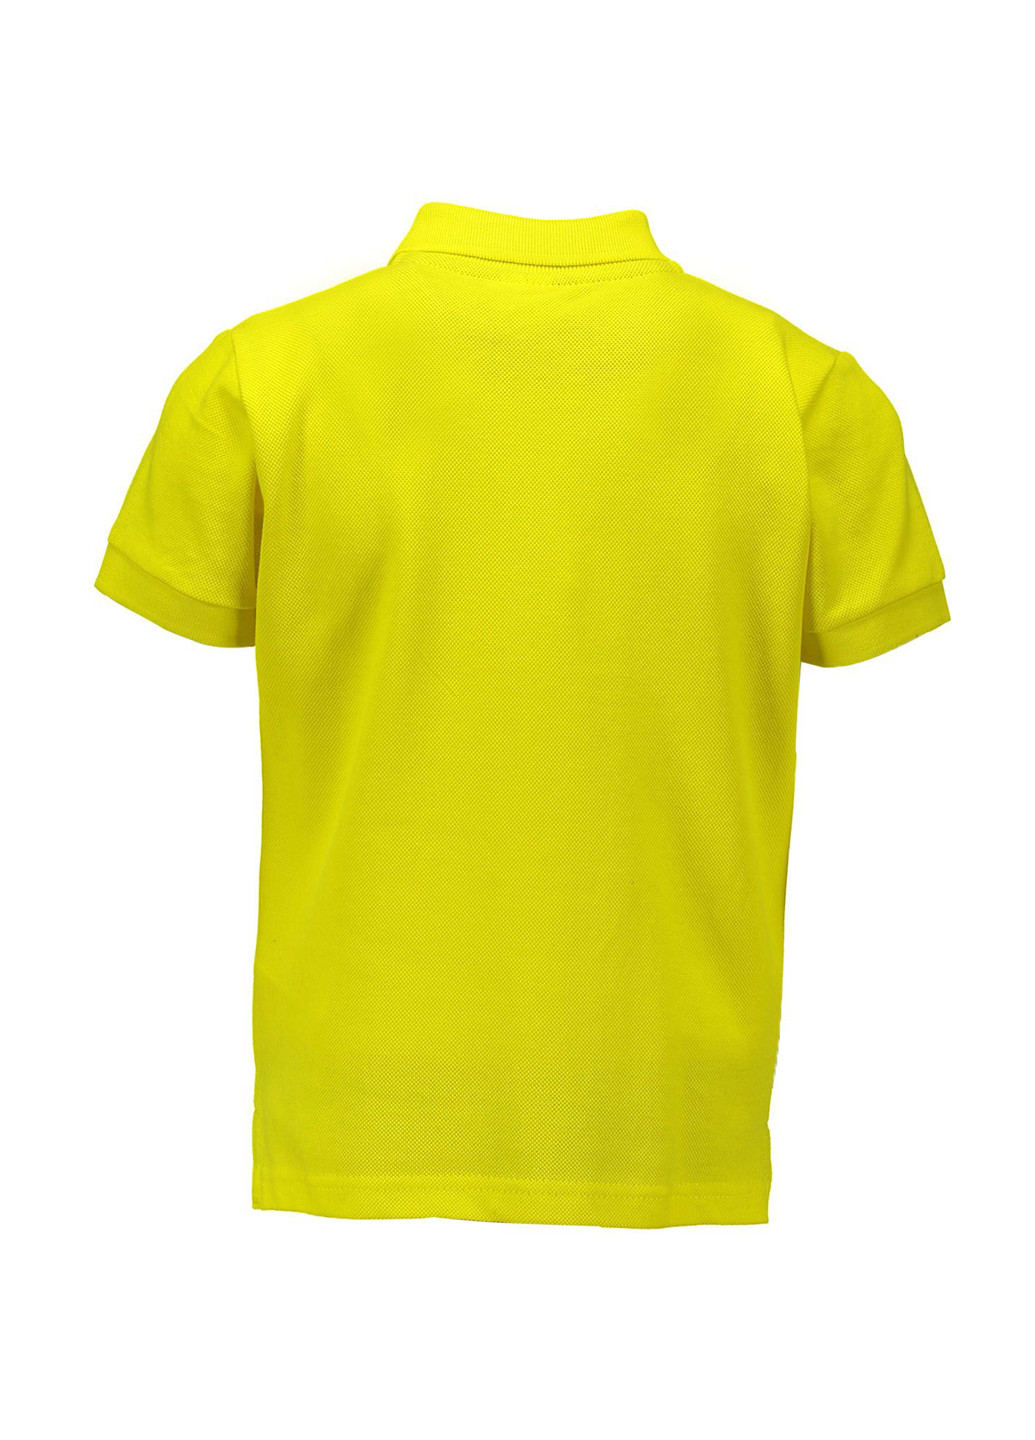 Желтая детская футболка-поло для мальчика Piazza Italia